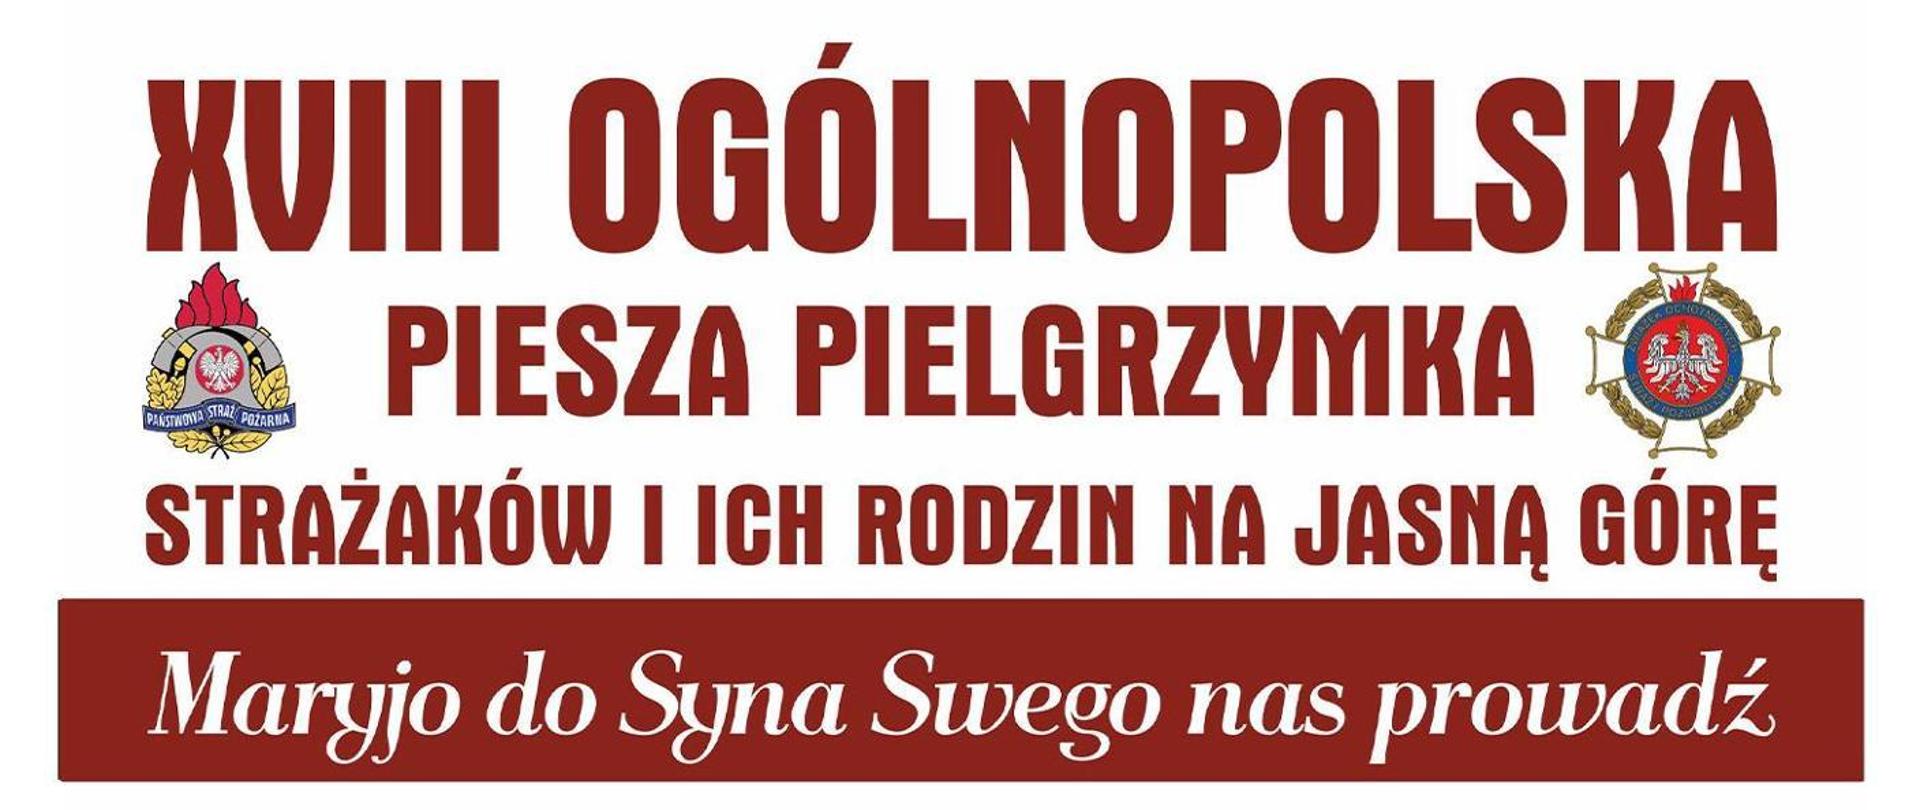 XVIII Ogólnopolska Piesza Pielgrzymka Strażaków i ich rodzin na Jasną Górę - baner